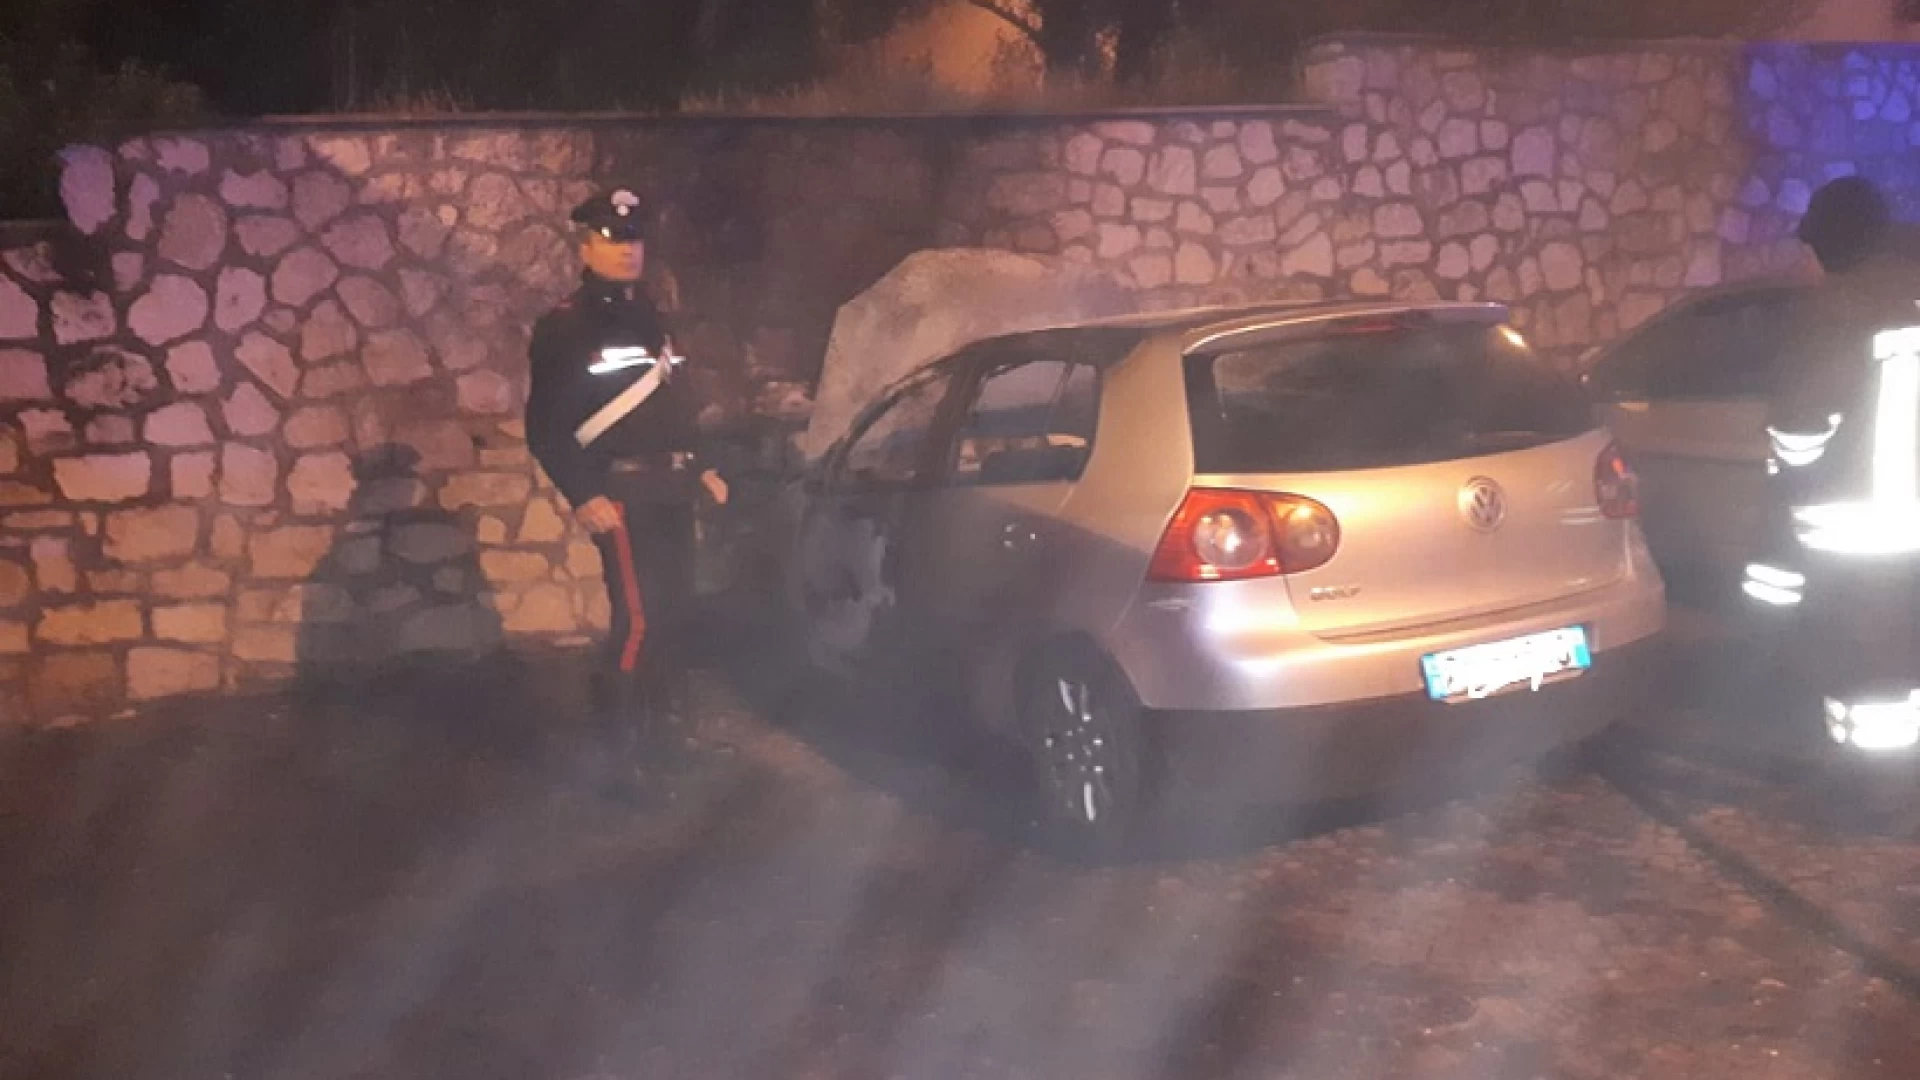 Fornelli: i Carabinieri intervengono per l'incendio di una autovettura parcheggiata in una delle piazze del paese.